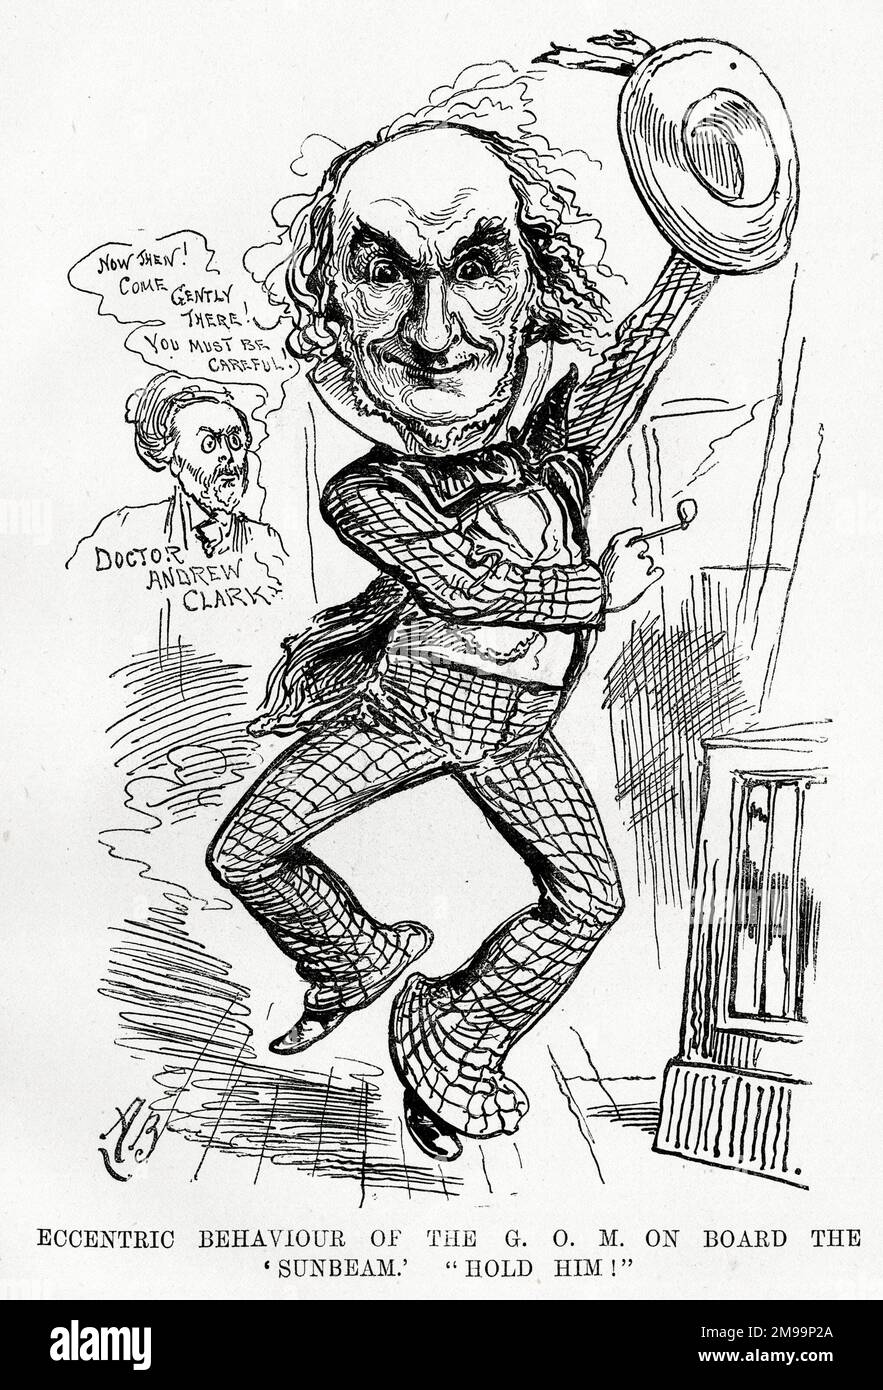 Cartoon, William Gladstone und Dr. Andrew Clark (sein Arzt), exzentrisches Verhalten des GOM an Bord der Sunbeam - haltet ihn fest! Stockfoto